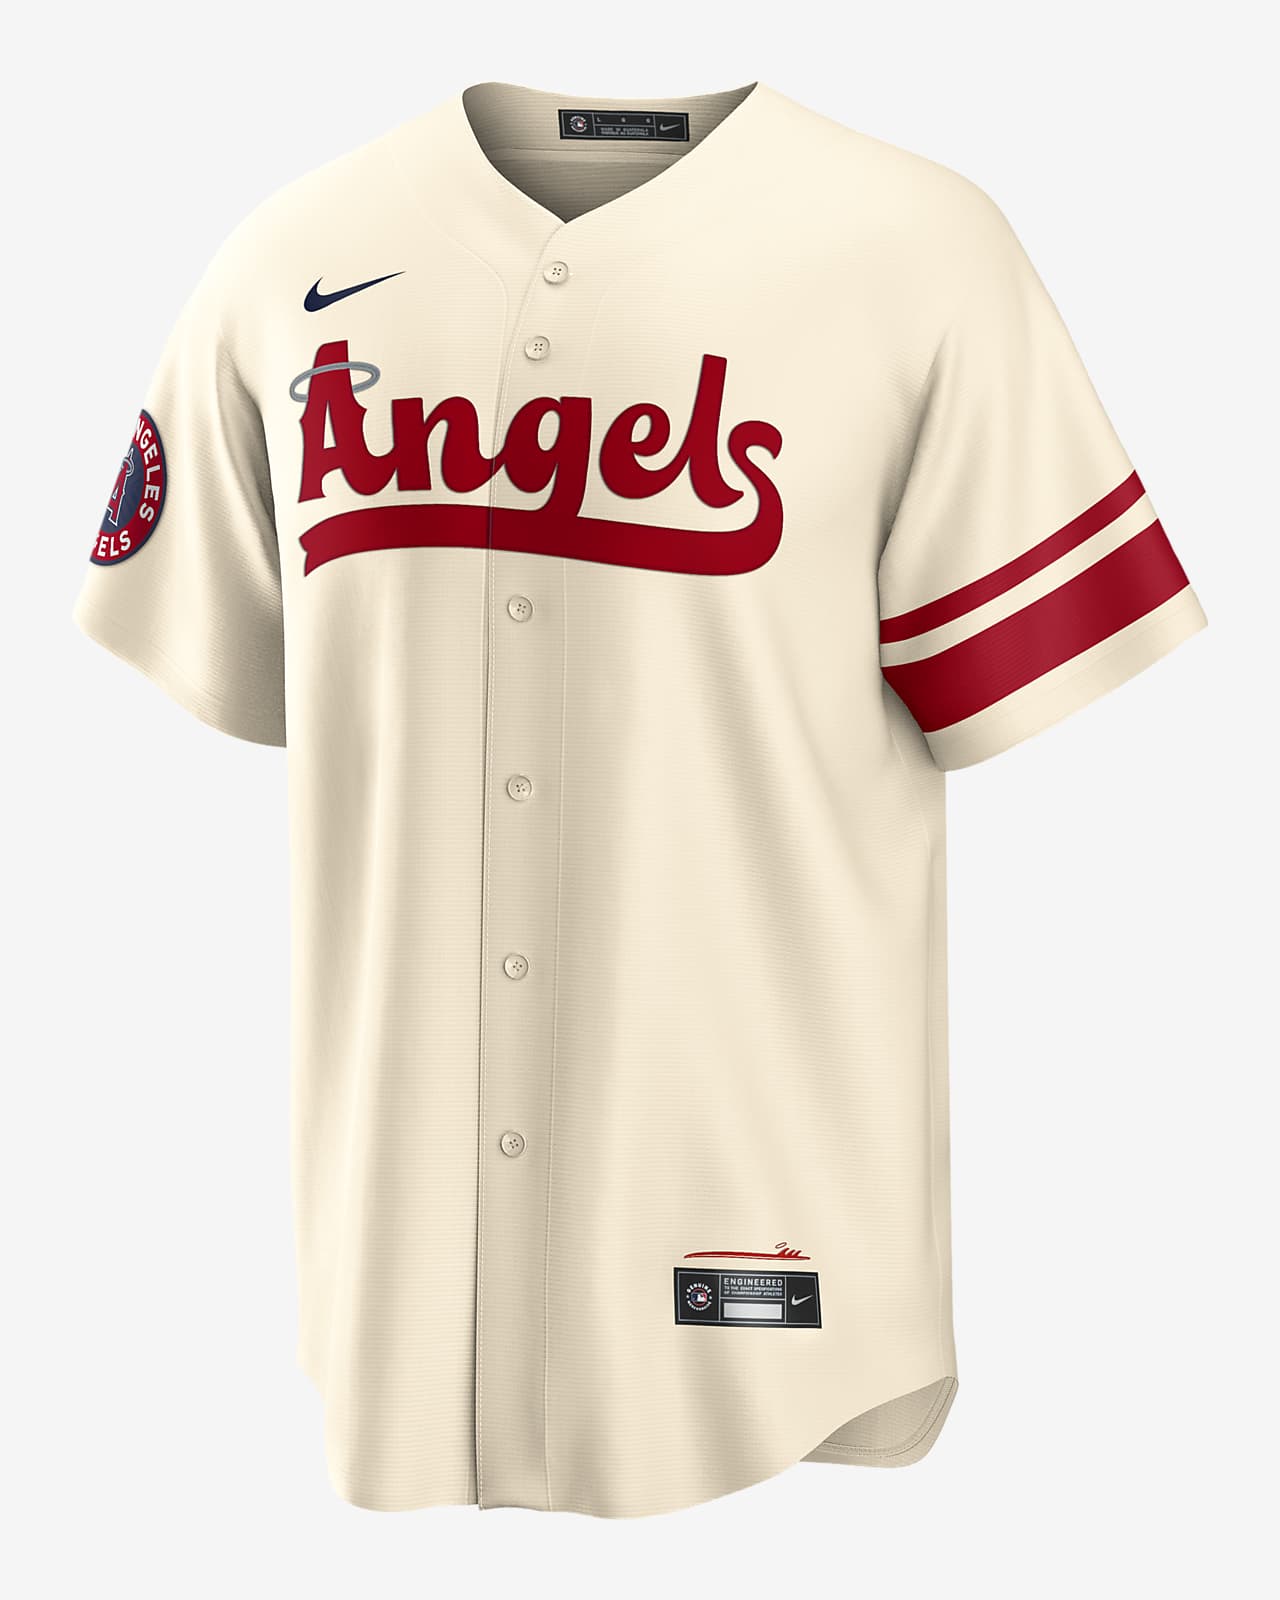 angels baseball ohtani jersey